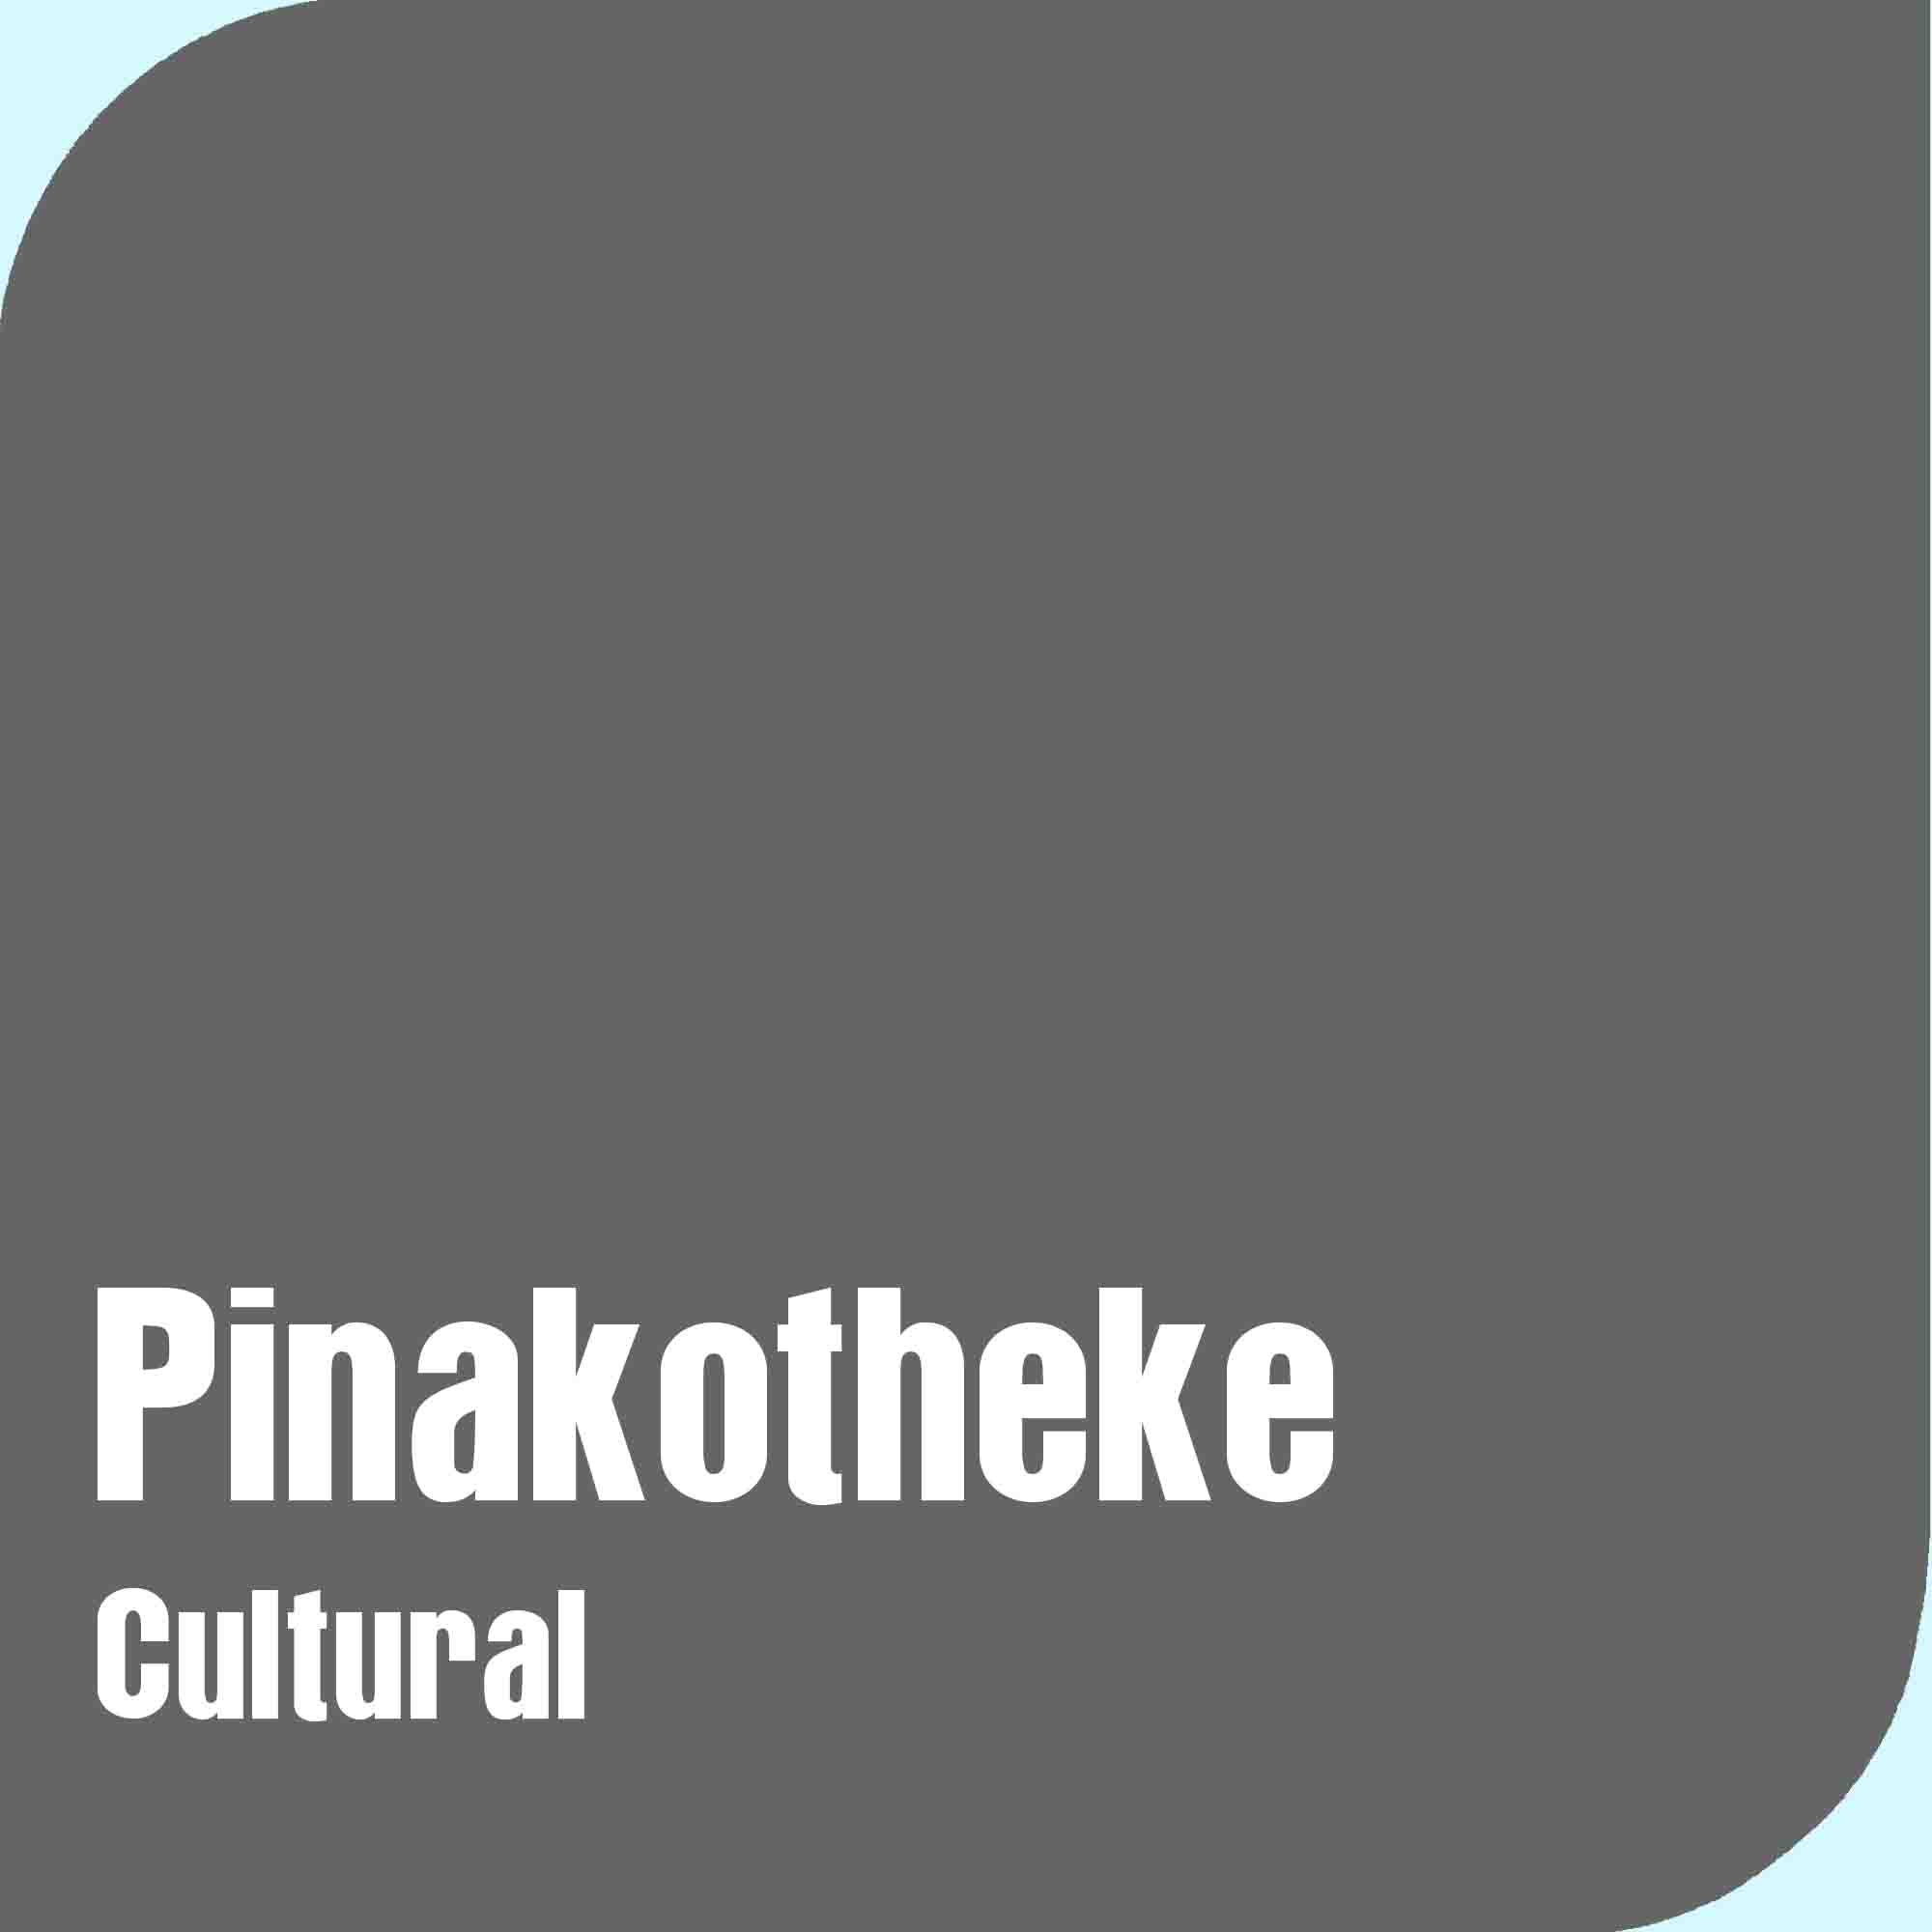 Pinakotheke Cultural